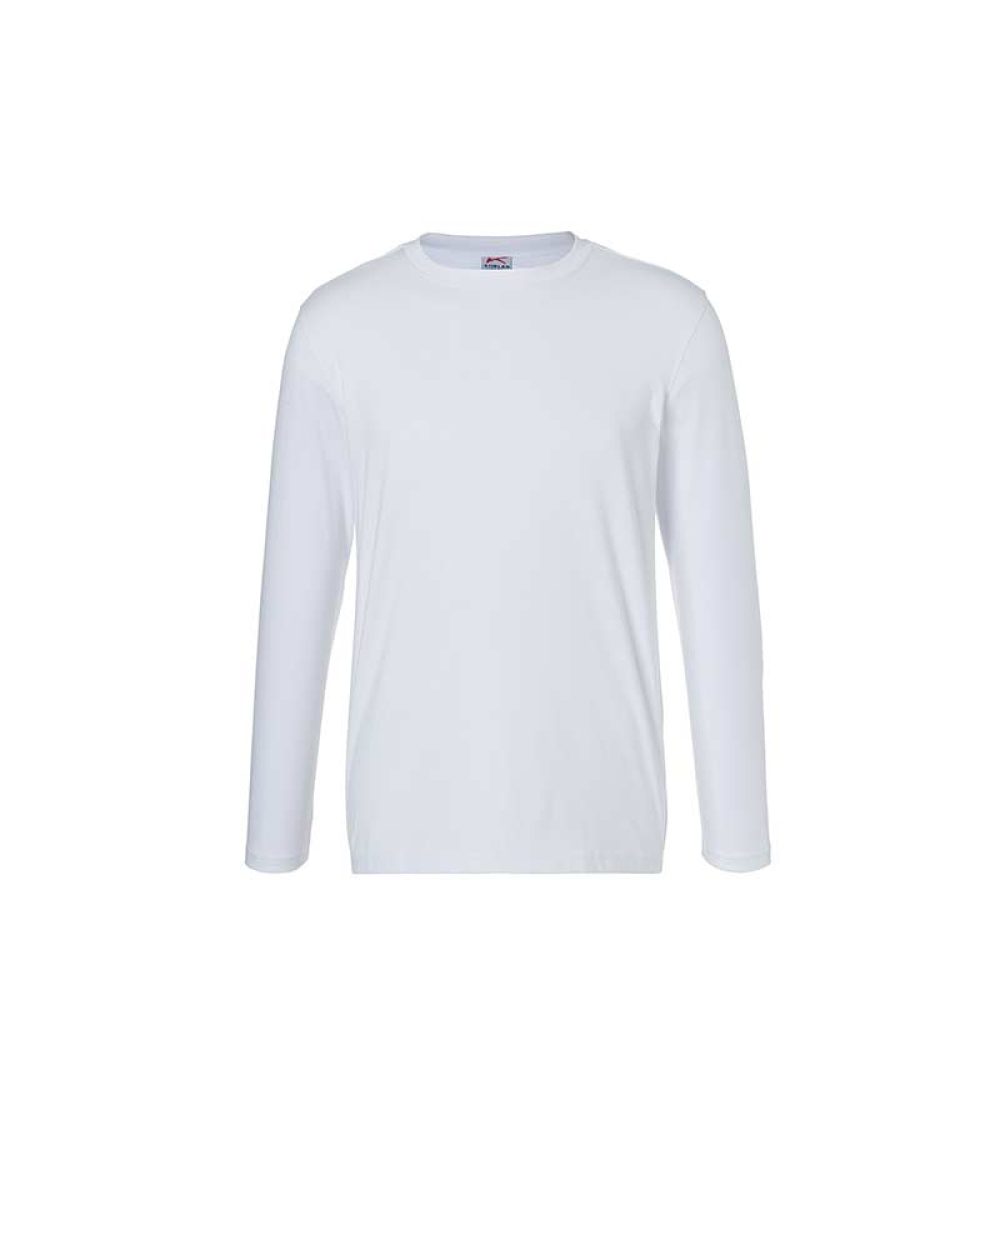 kuebler-langarm-t-shirt-shirts-5025-6240-10